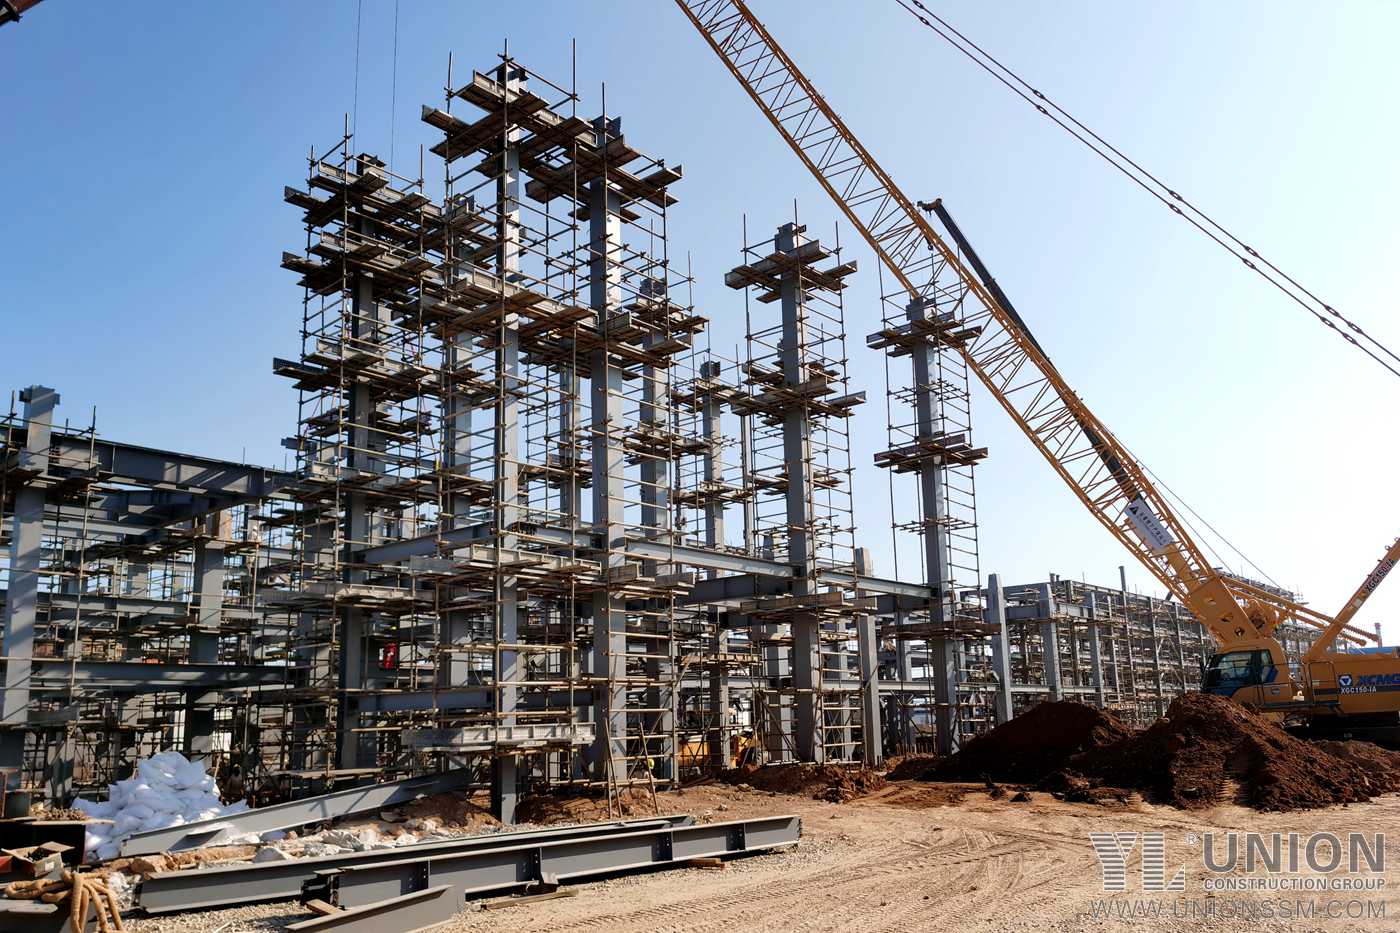 تصنيع وتركيب المنصات الفولاذية بإنتاج سنوي يصل إلى 150,000 طن من أنهيدريد الماليك